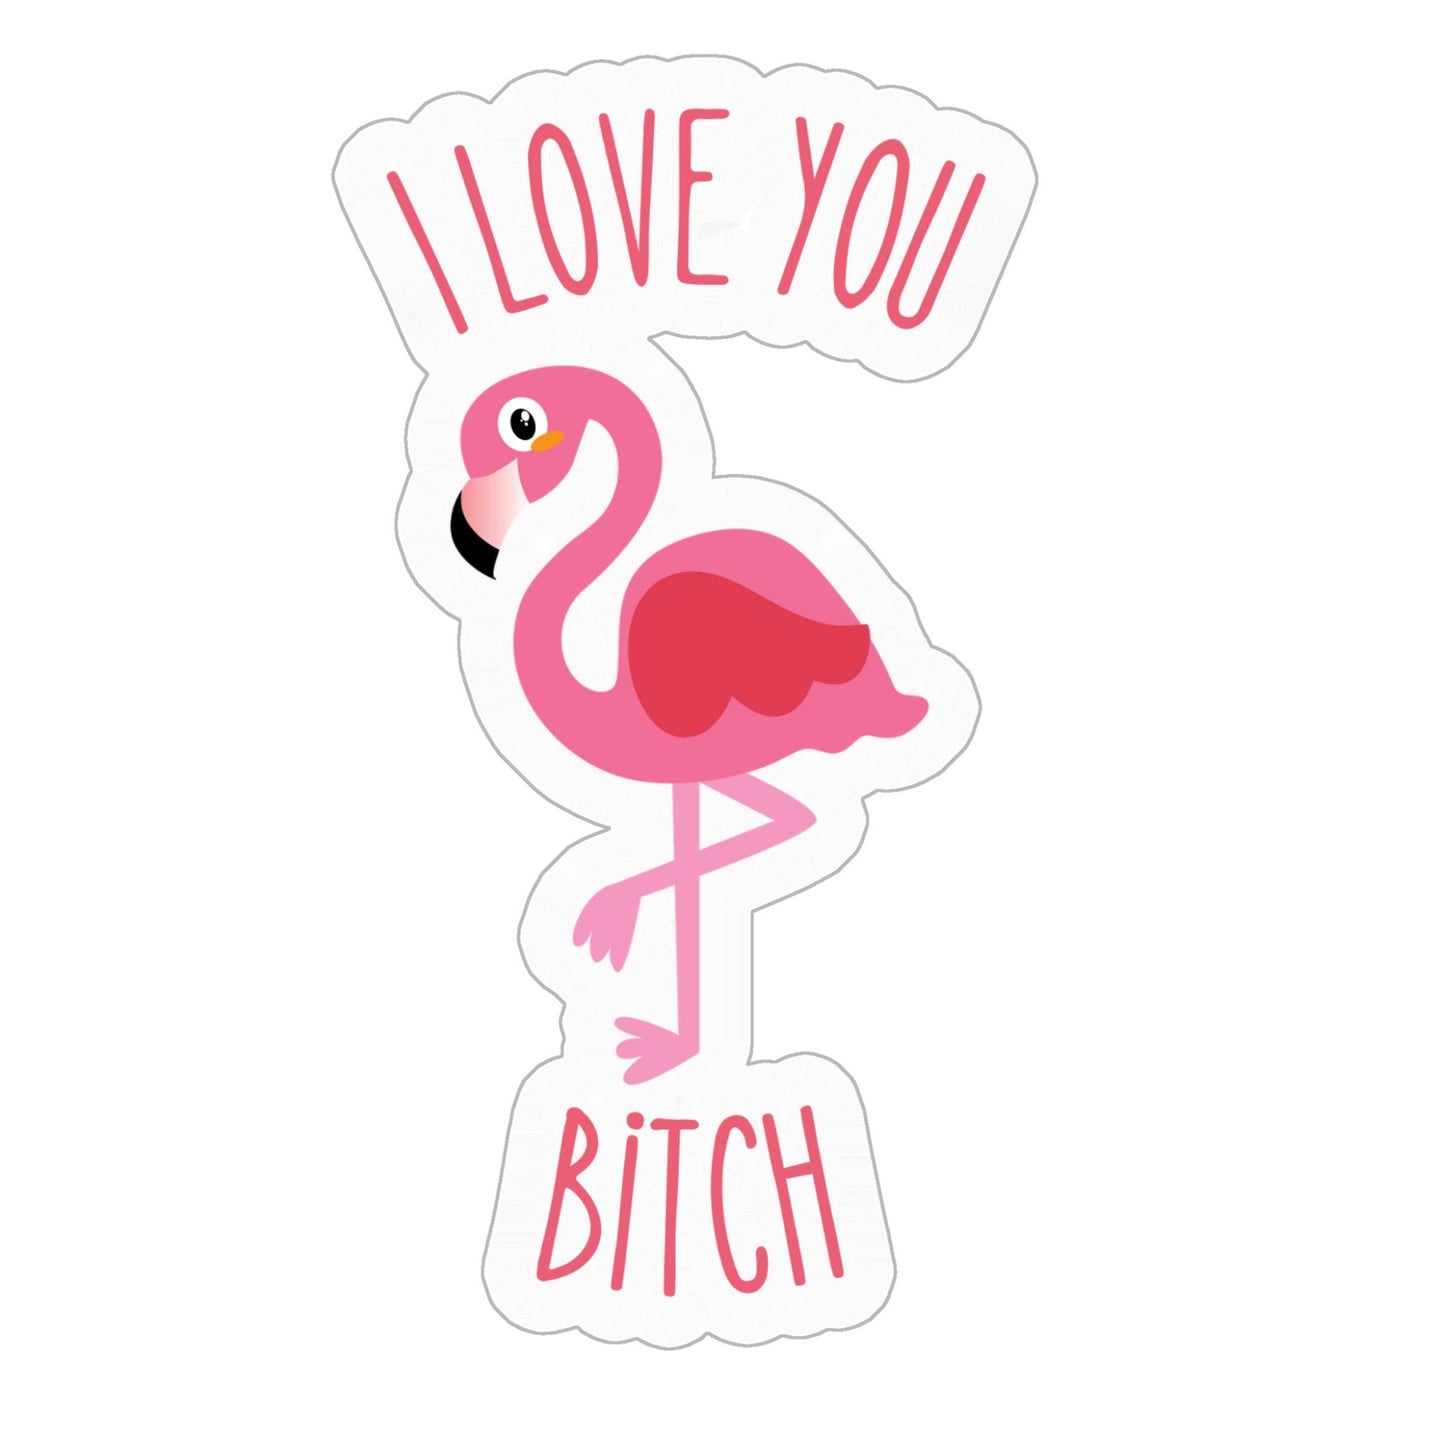 I Love You Bitch Stickers - 4" x 4"